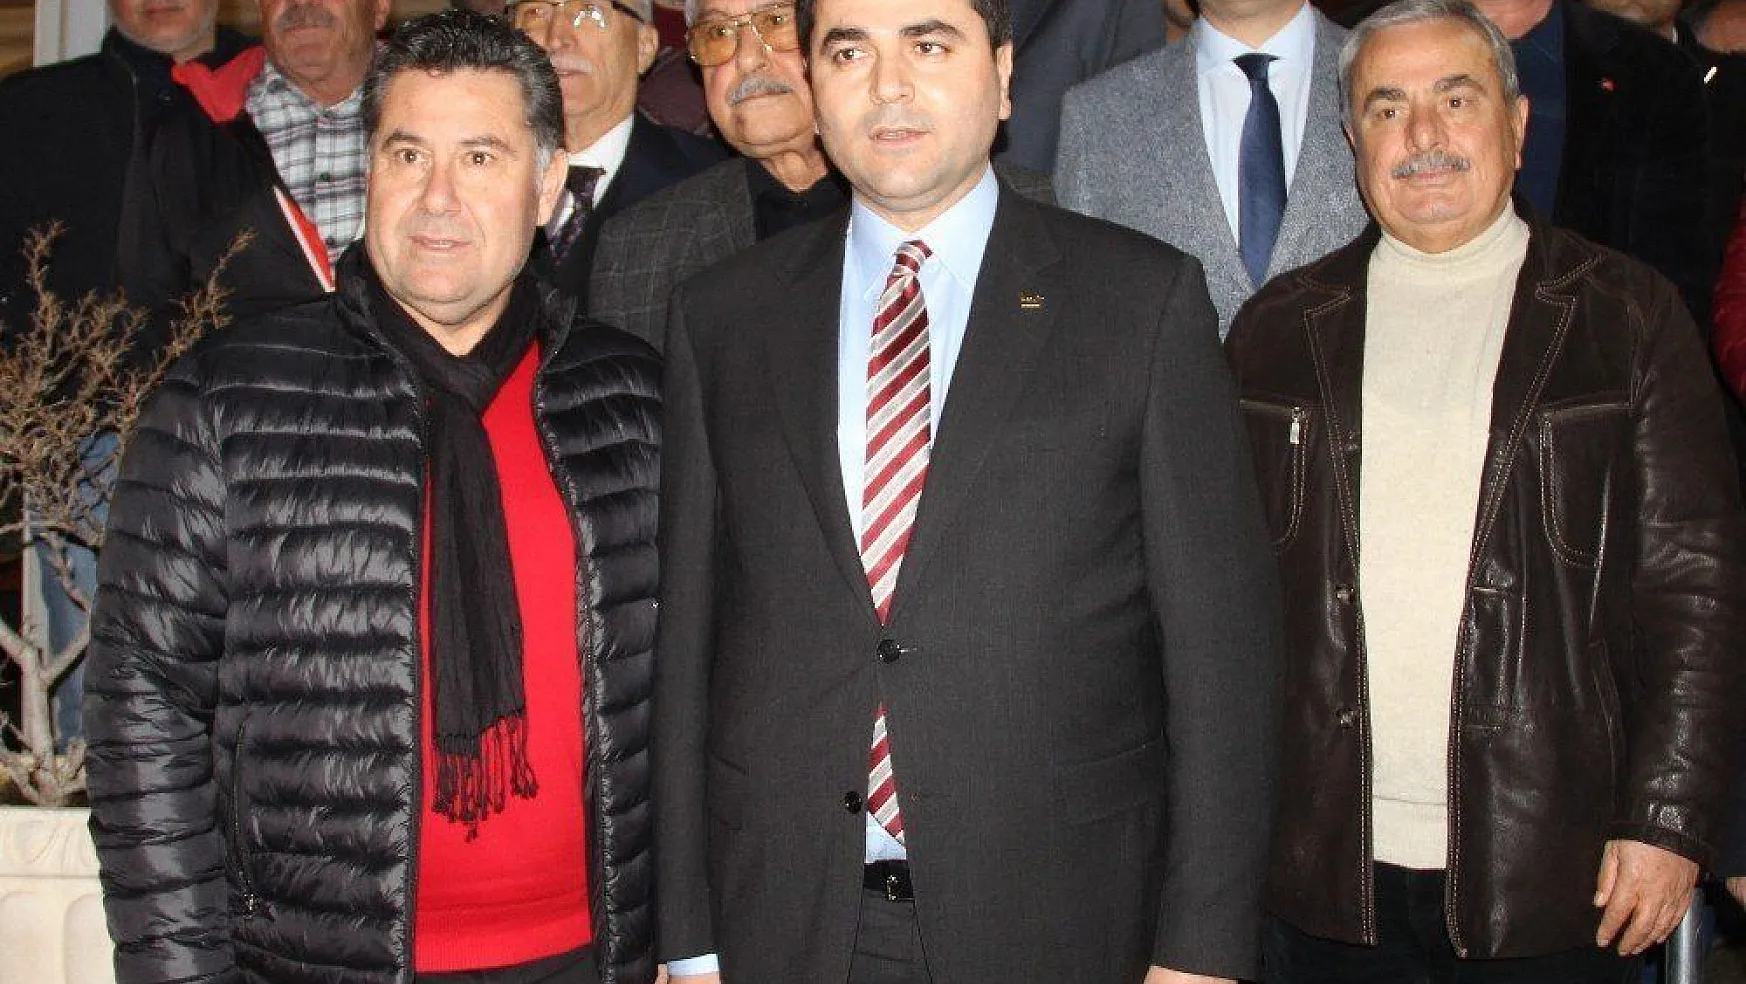 DP Genel Başkanı Gültekin Uysal, Kocadon'u Muğla'ya aday göstermeye hazırlanıyor